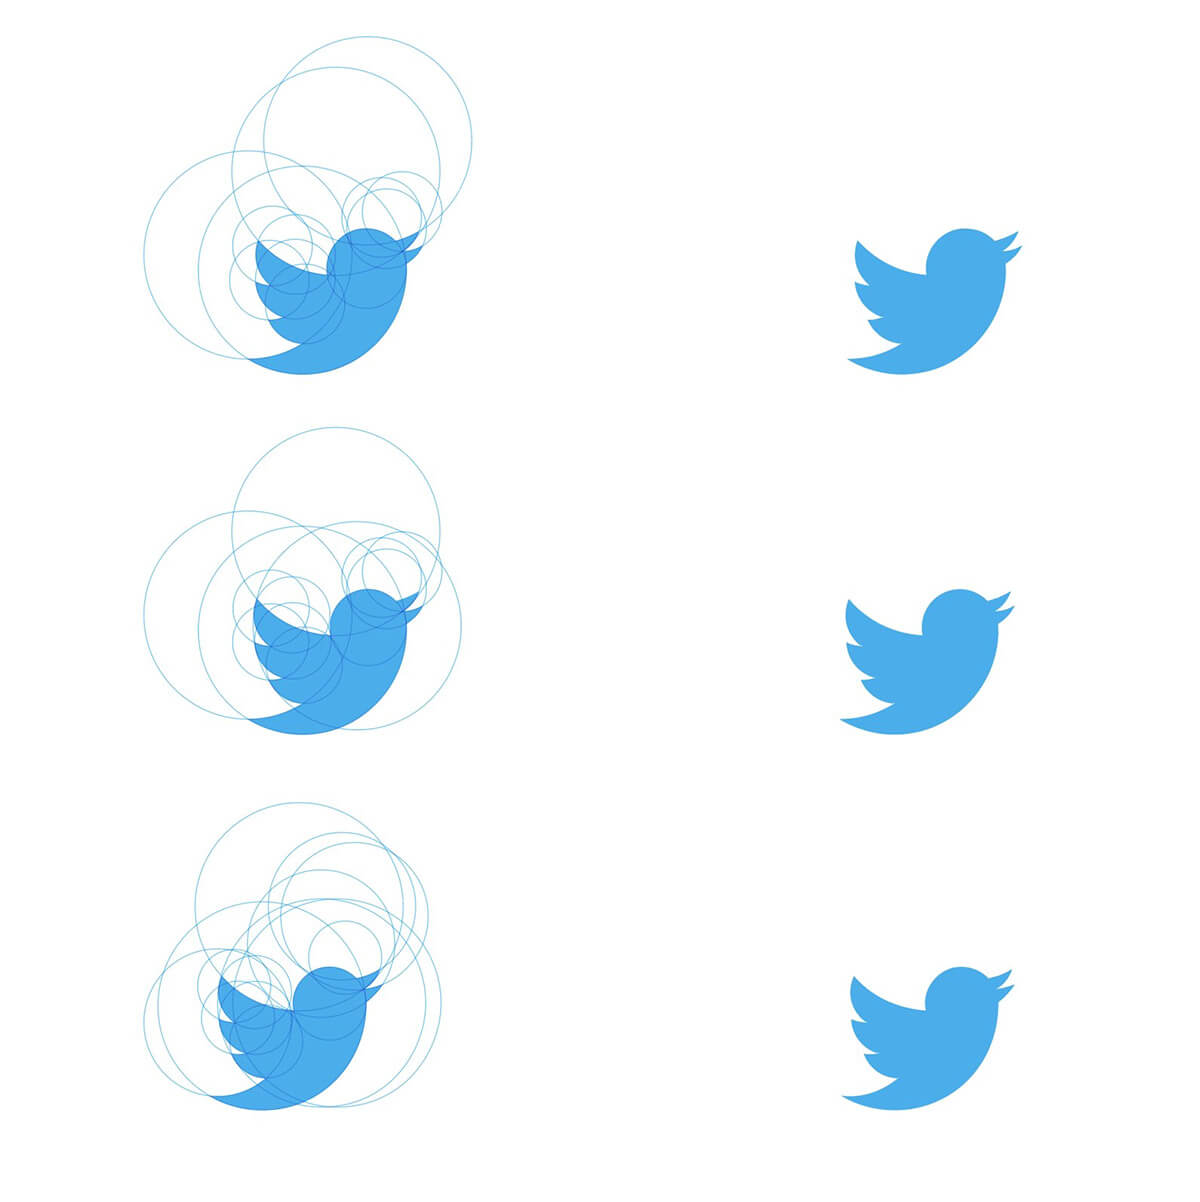 複数の円を使って描いた青い鳥のロゴ